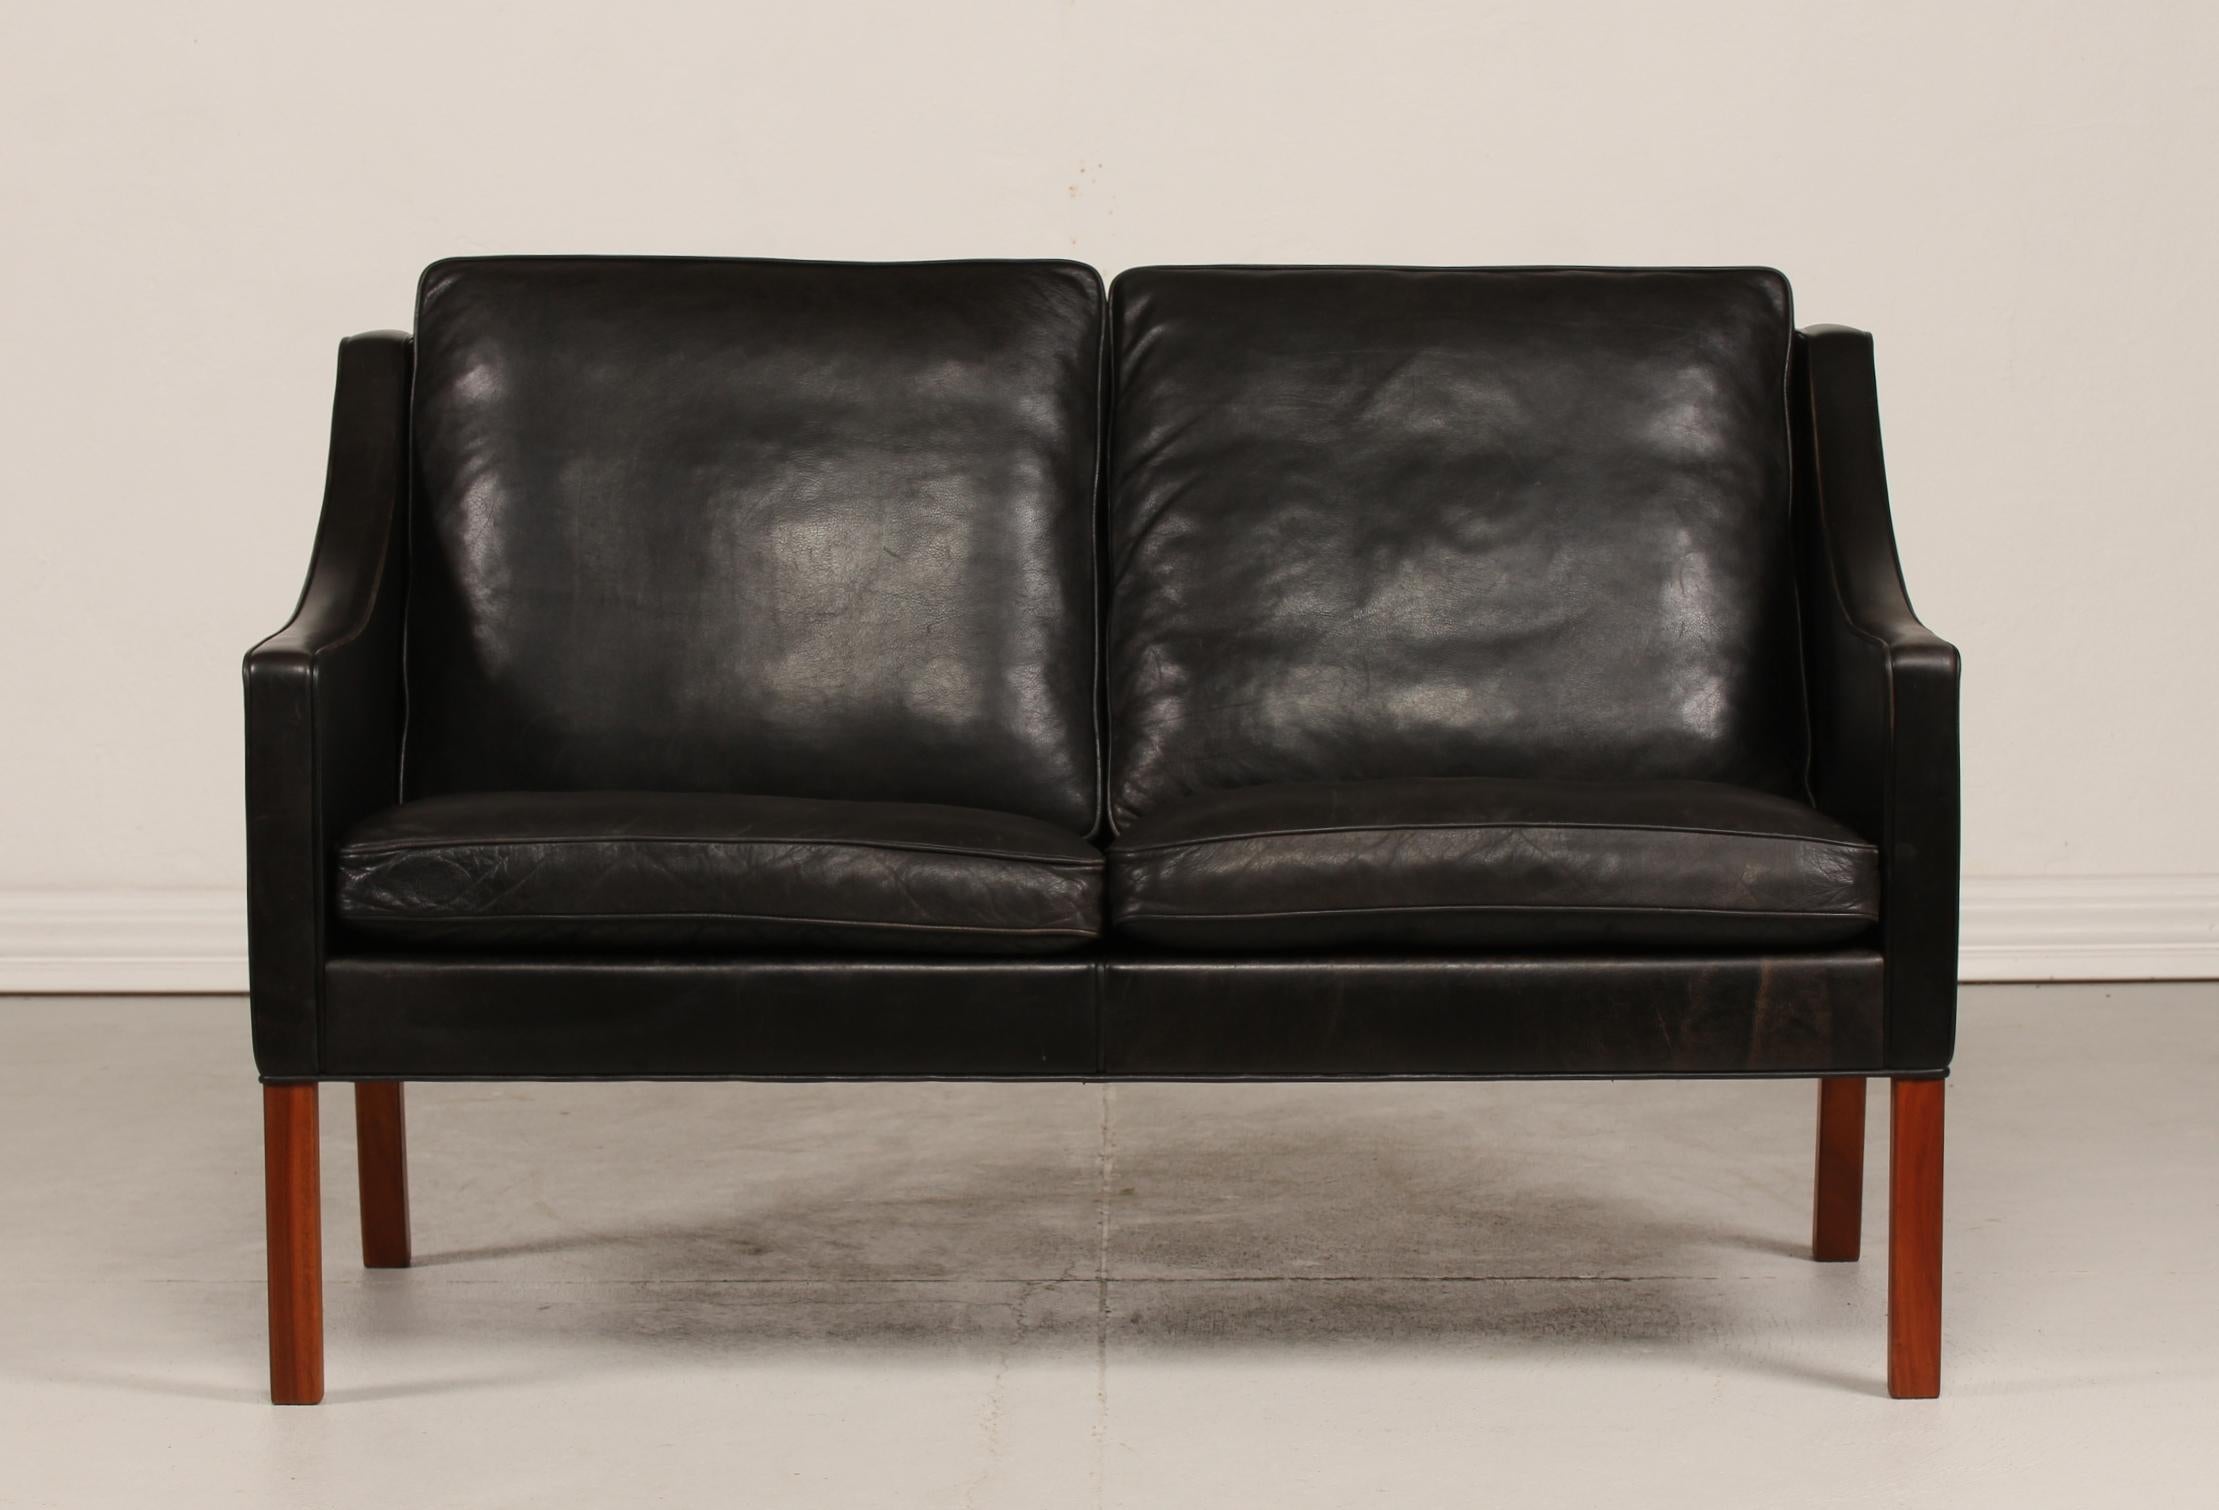 Dänisches Vintage-Sofa von Børge Mogensen (1914-1972) für 2 Personen, Modell Nr. 2208.
Er ist mit dem originalen schwarzen Leder gepolstert. Die Beine sind aus Mahagoniholz gefertigt. 
Die Kissen sind innen mit Granulat und Naturfedern gefüllt,